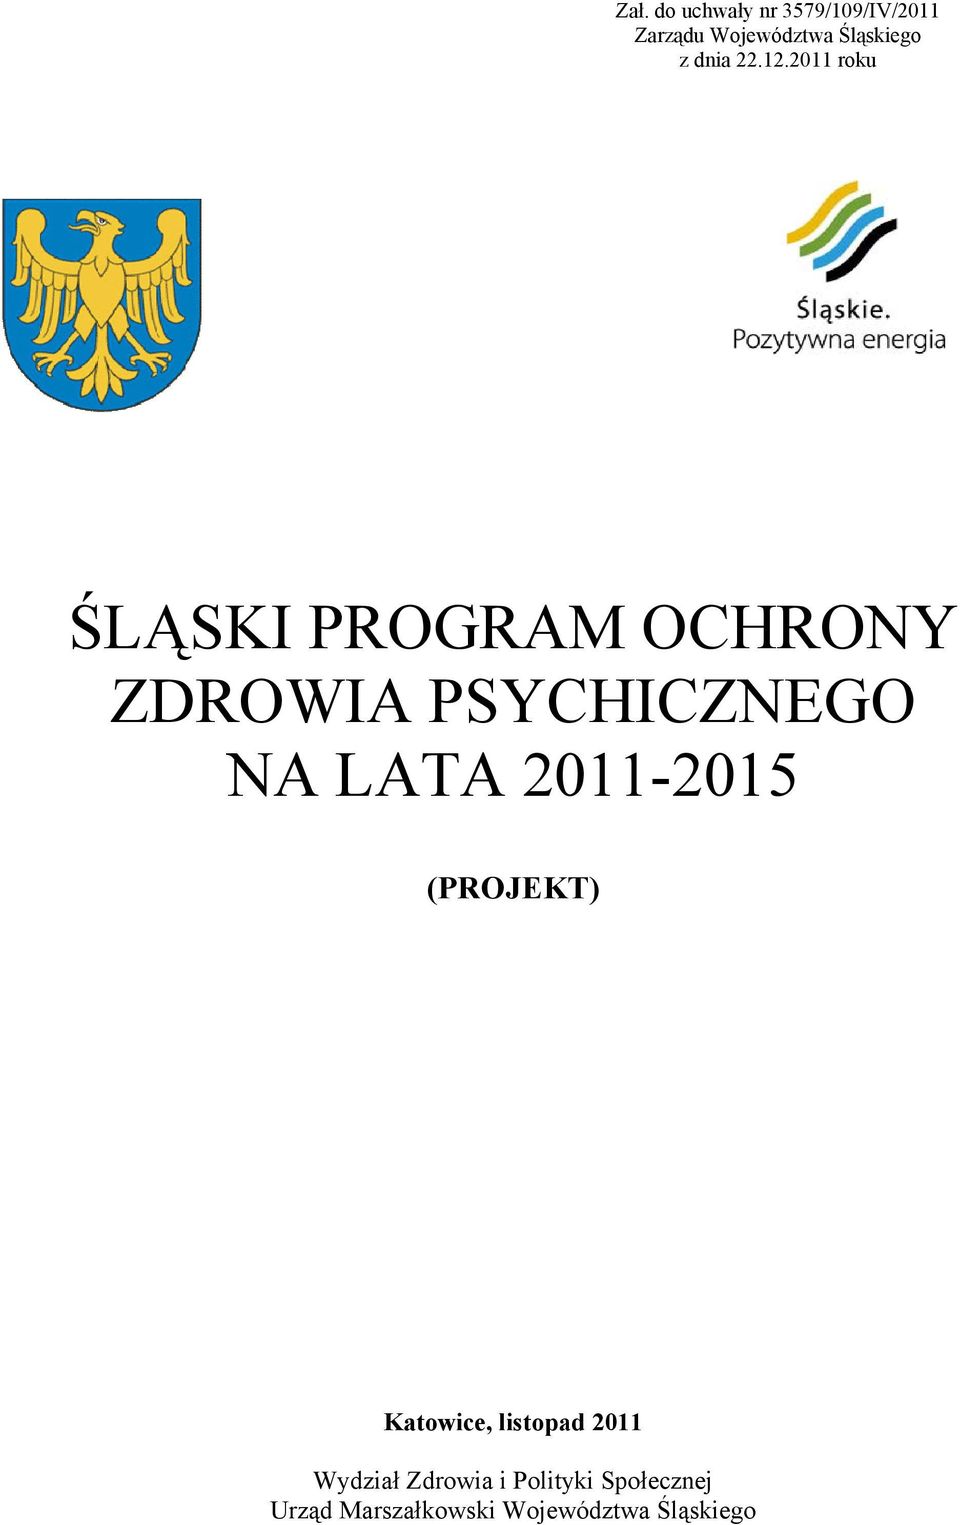 2011 roku ŚLĄSKI PROGRAM OCHRONY ZDROWIA PSYCHICZNEGO NA LATA